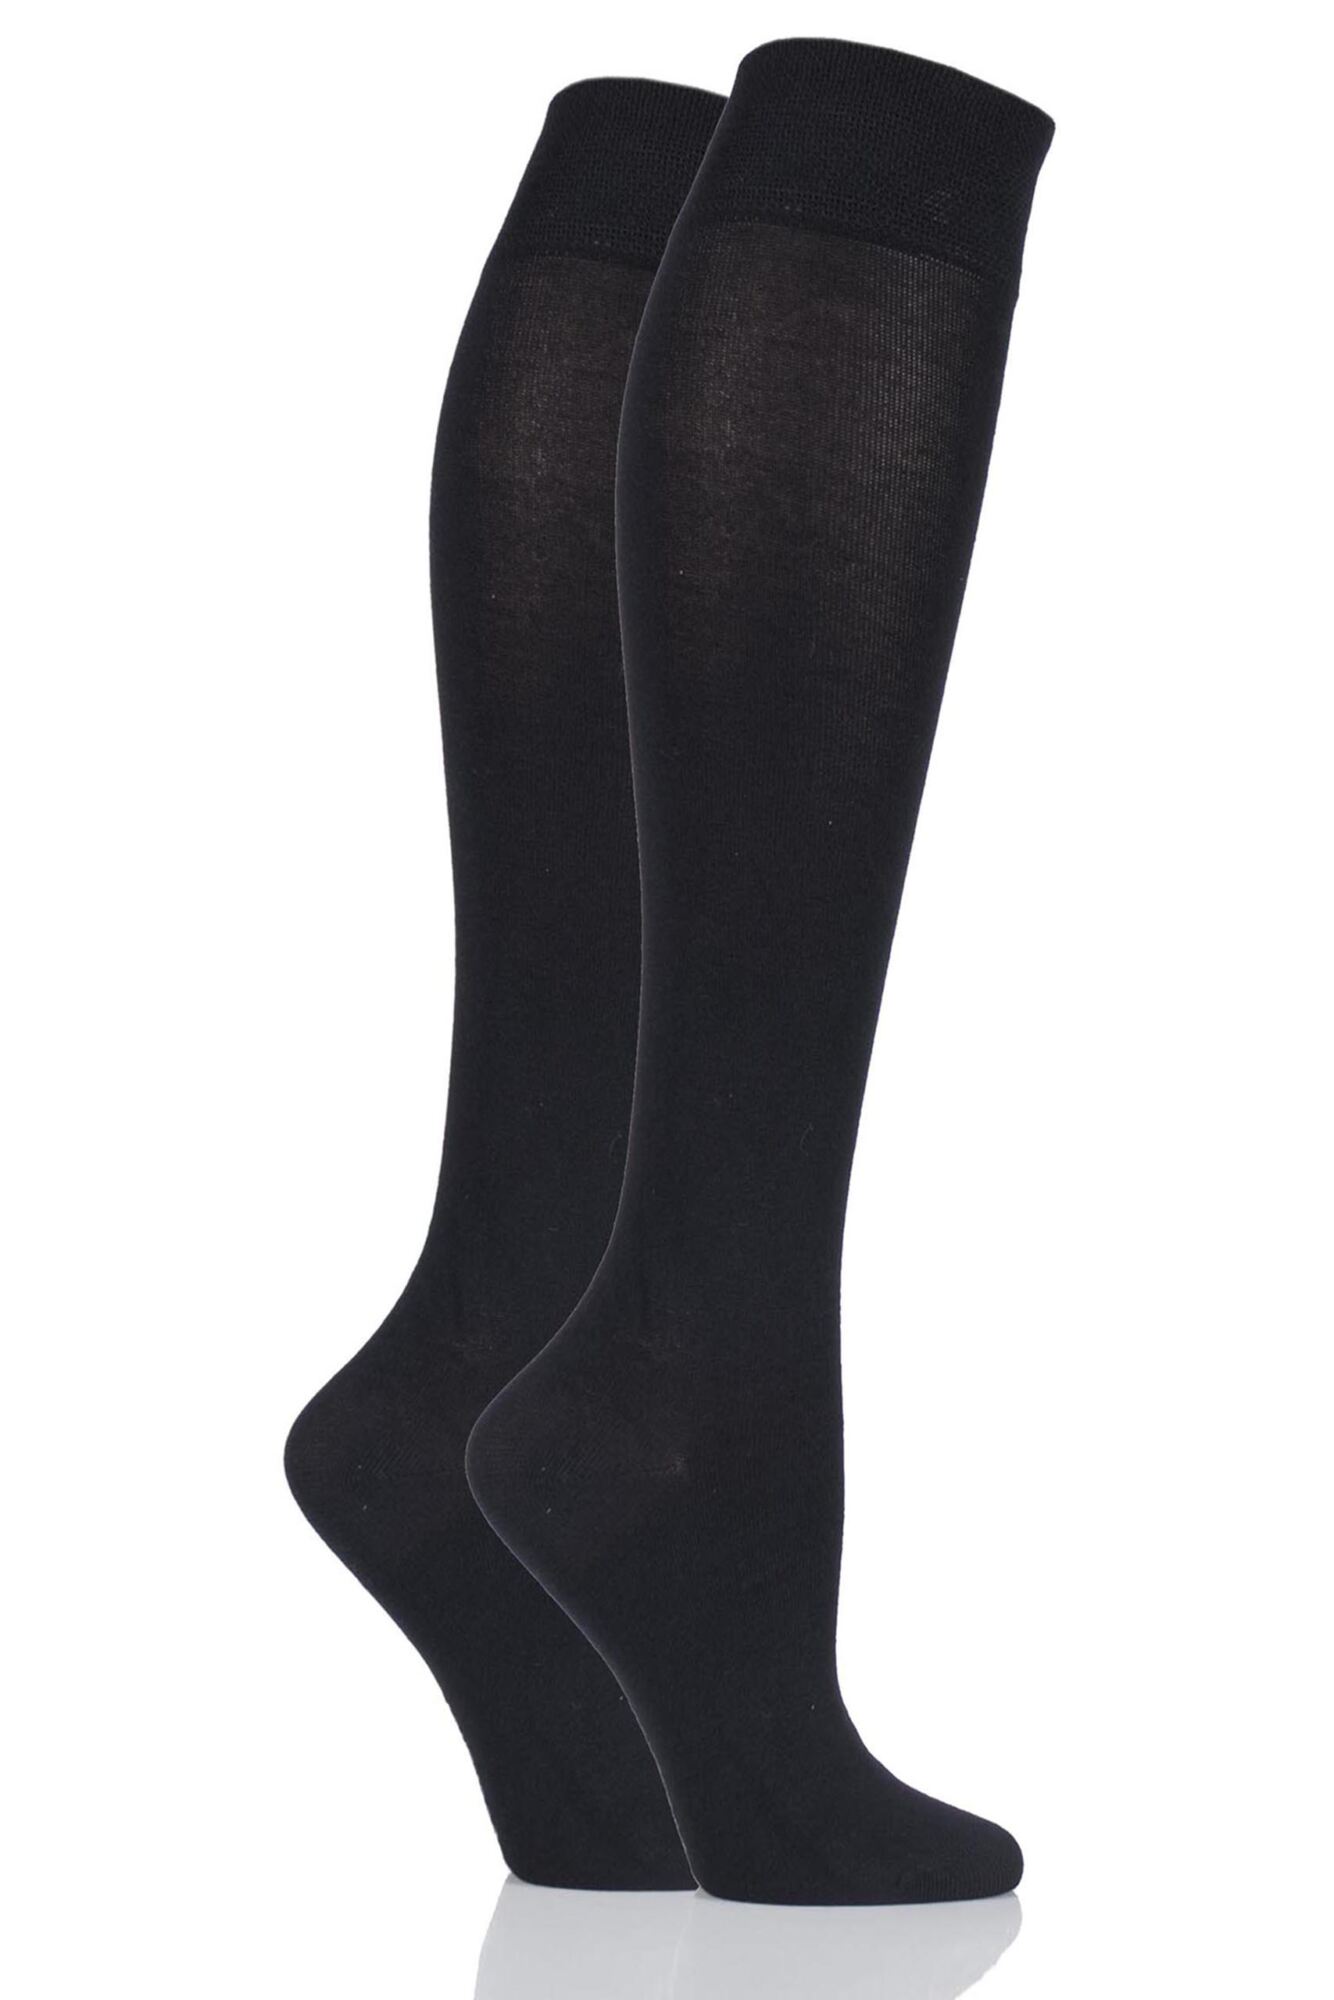 Ελαστικές Κάλτσες Κάτω Γόνατος 70 D ART 1201 Elly